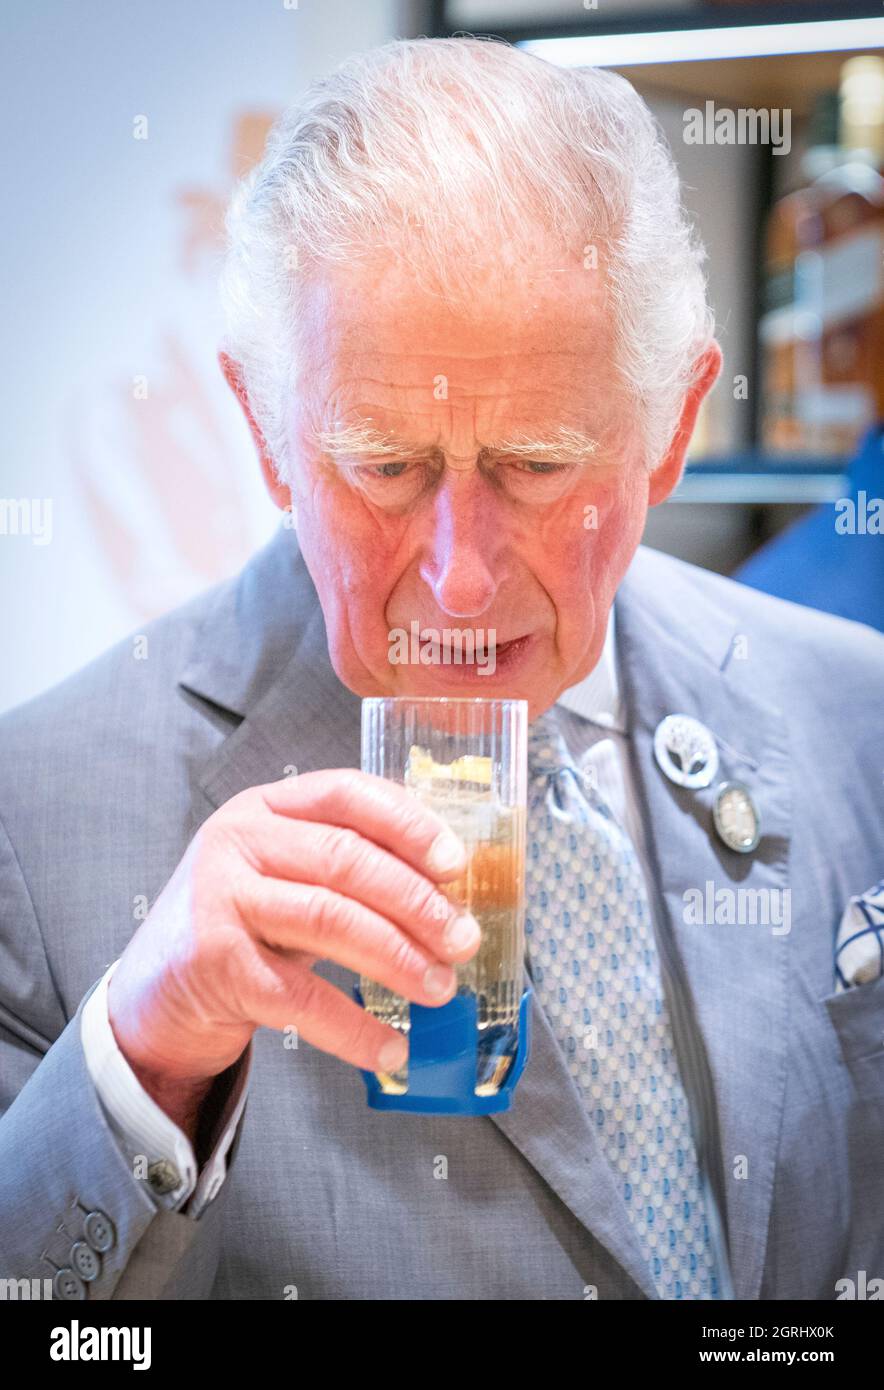 Il Principe di Galles conosciuto come il Duca di Rothesay quando si trova in Scozia, durante una visita a Johnnie Walker Princes Street per aprire ufficialmente la nuova esperienza globale di whisky visitatori a Edimburgo. Data foto: Venerdì 1 ottobre 2021. Foto Stock